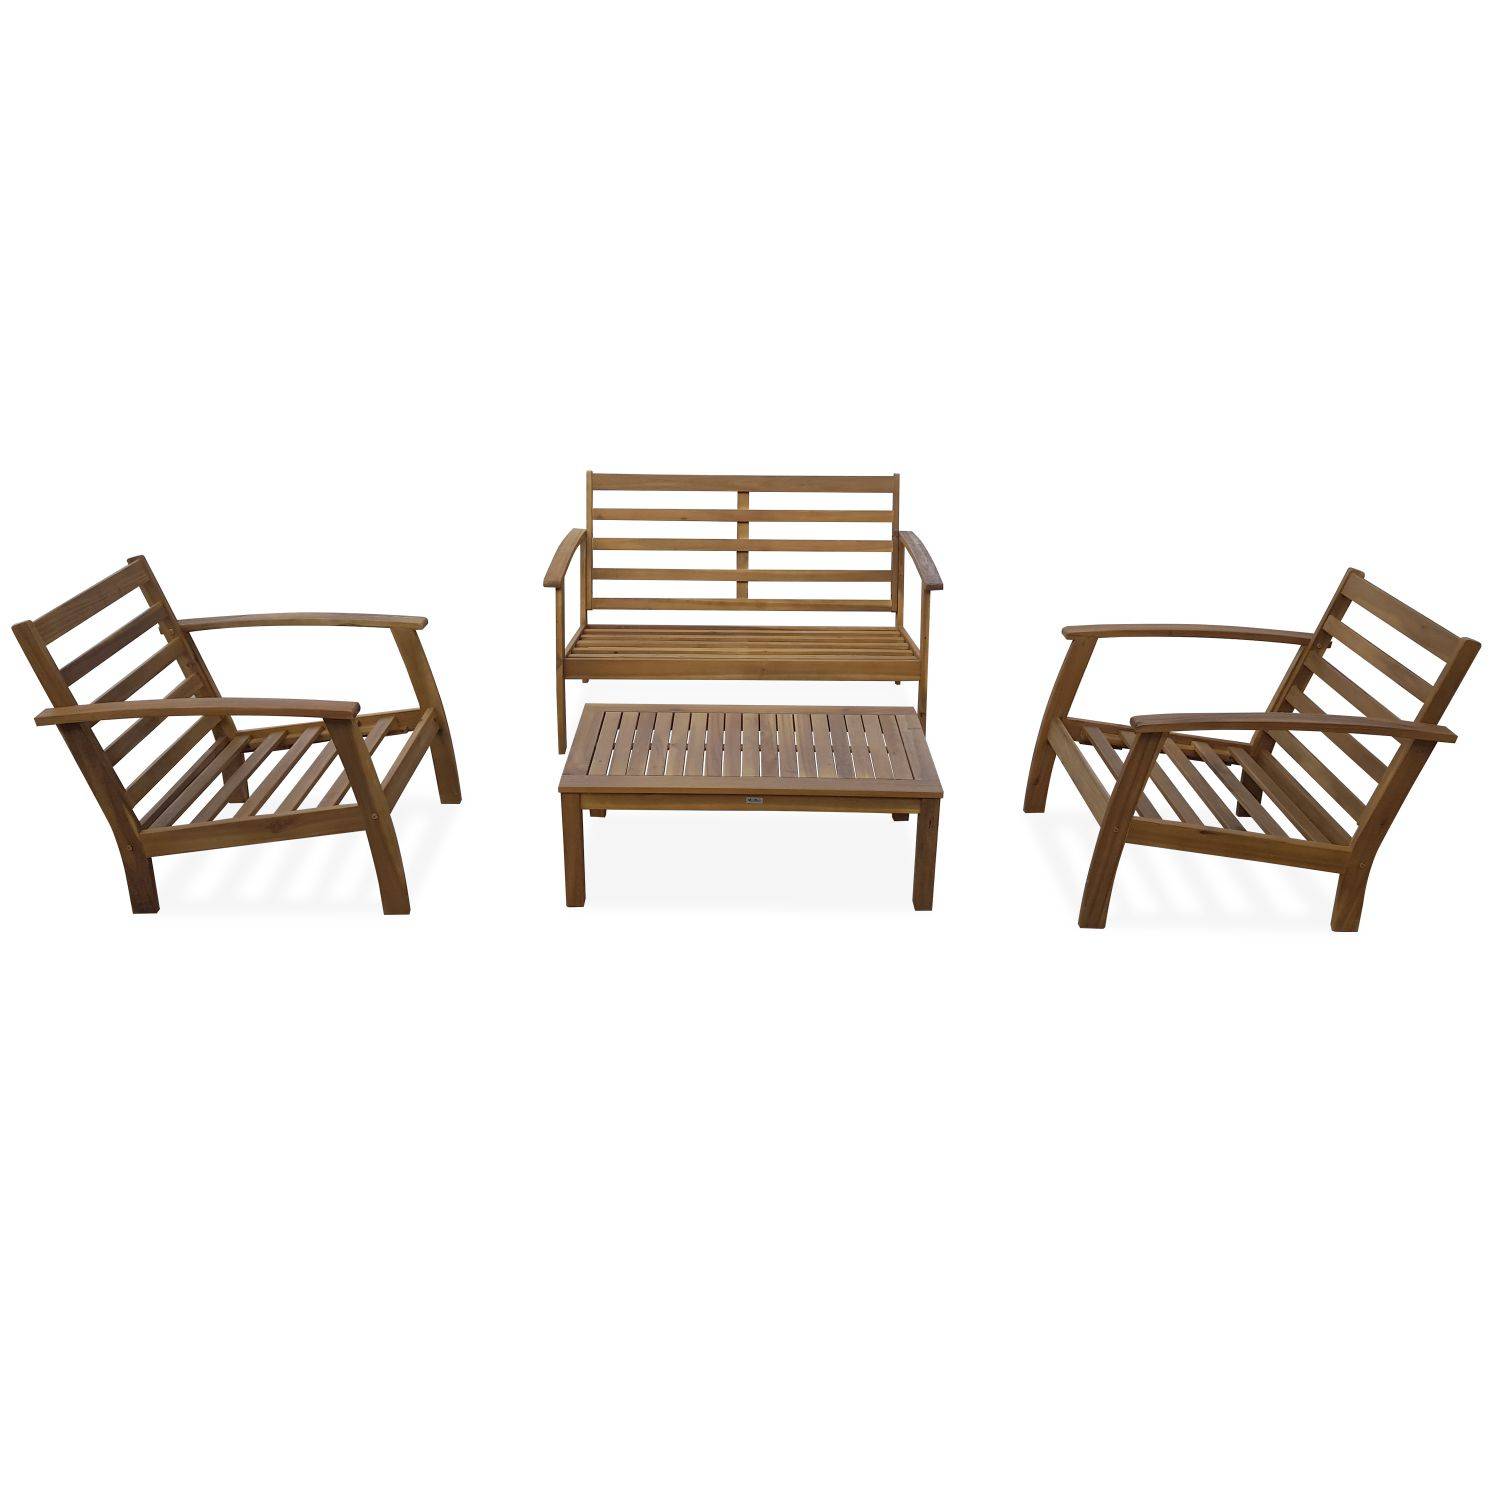 Salon de jardin en bois 4 places - Ushuaïa - Coussins moutarde, canapé, fauteuils et table basse en acacia, design Photo7